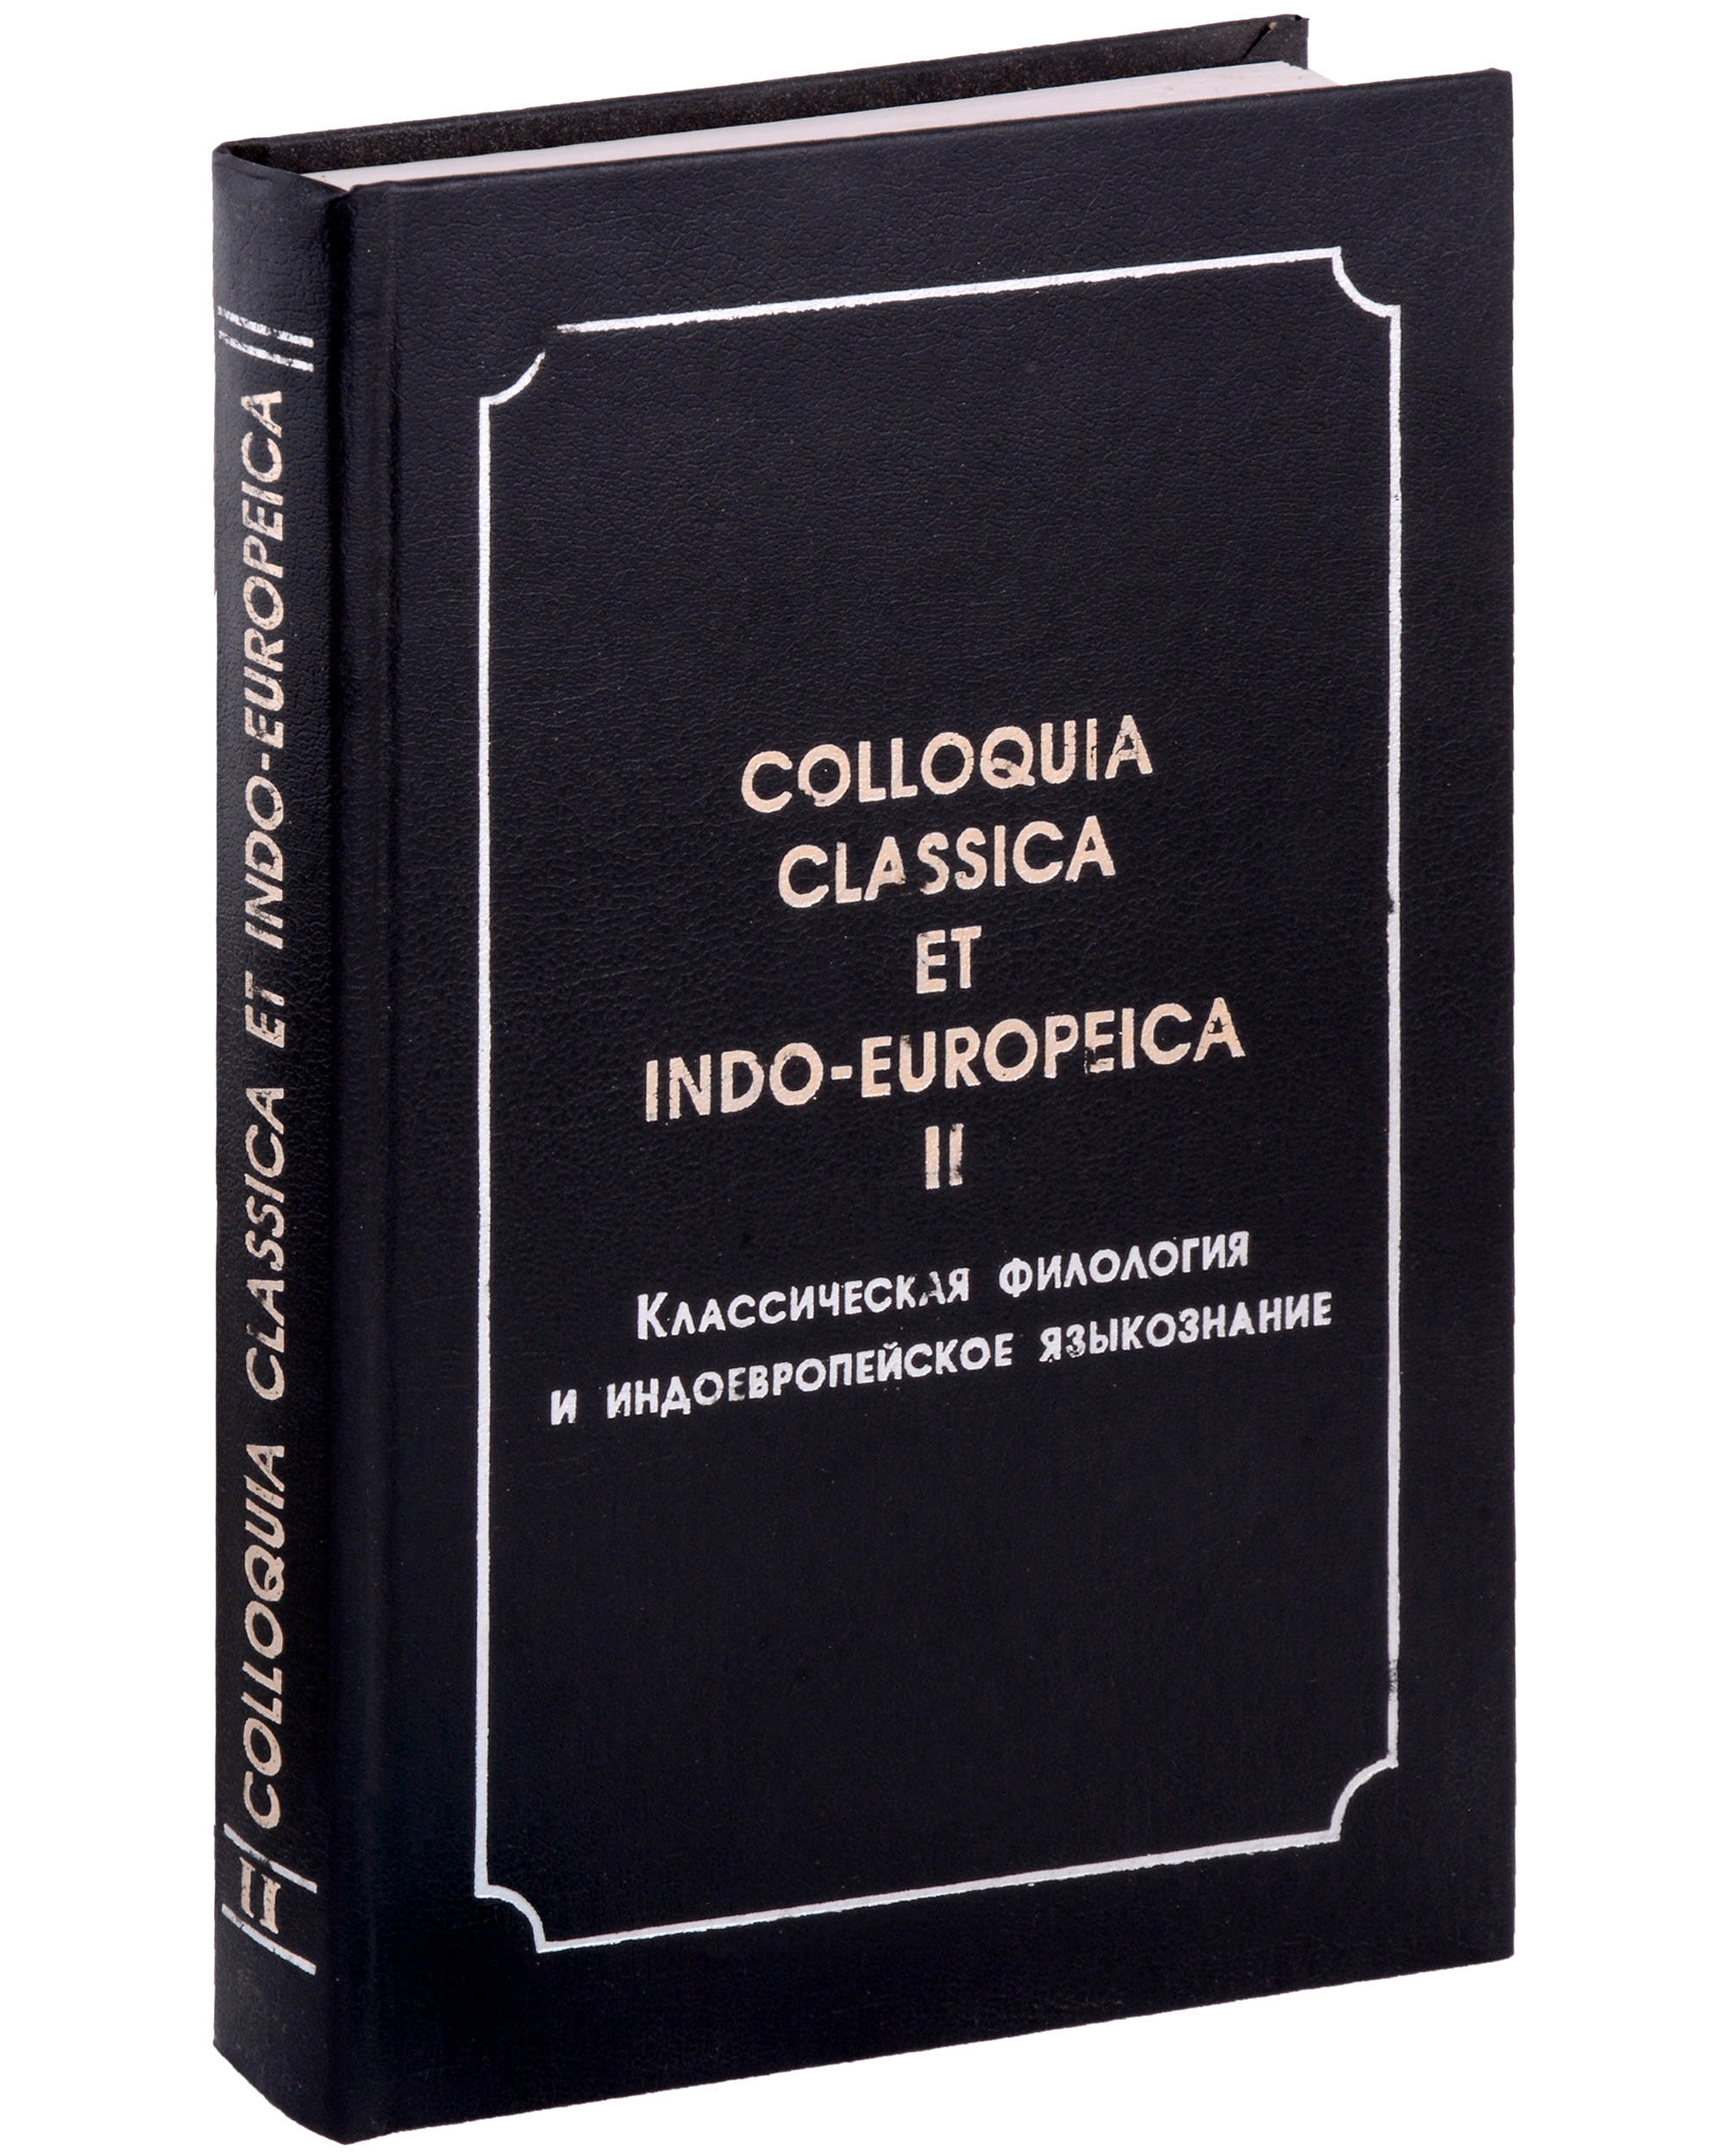 Colloquia classica et indo-europeica. II.     